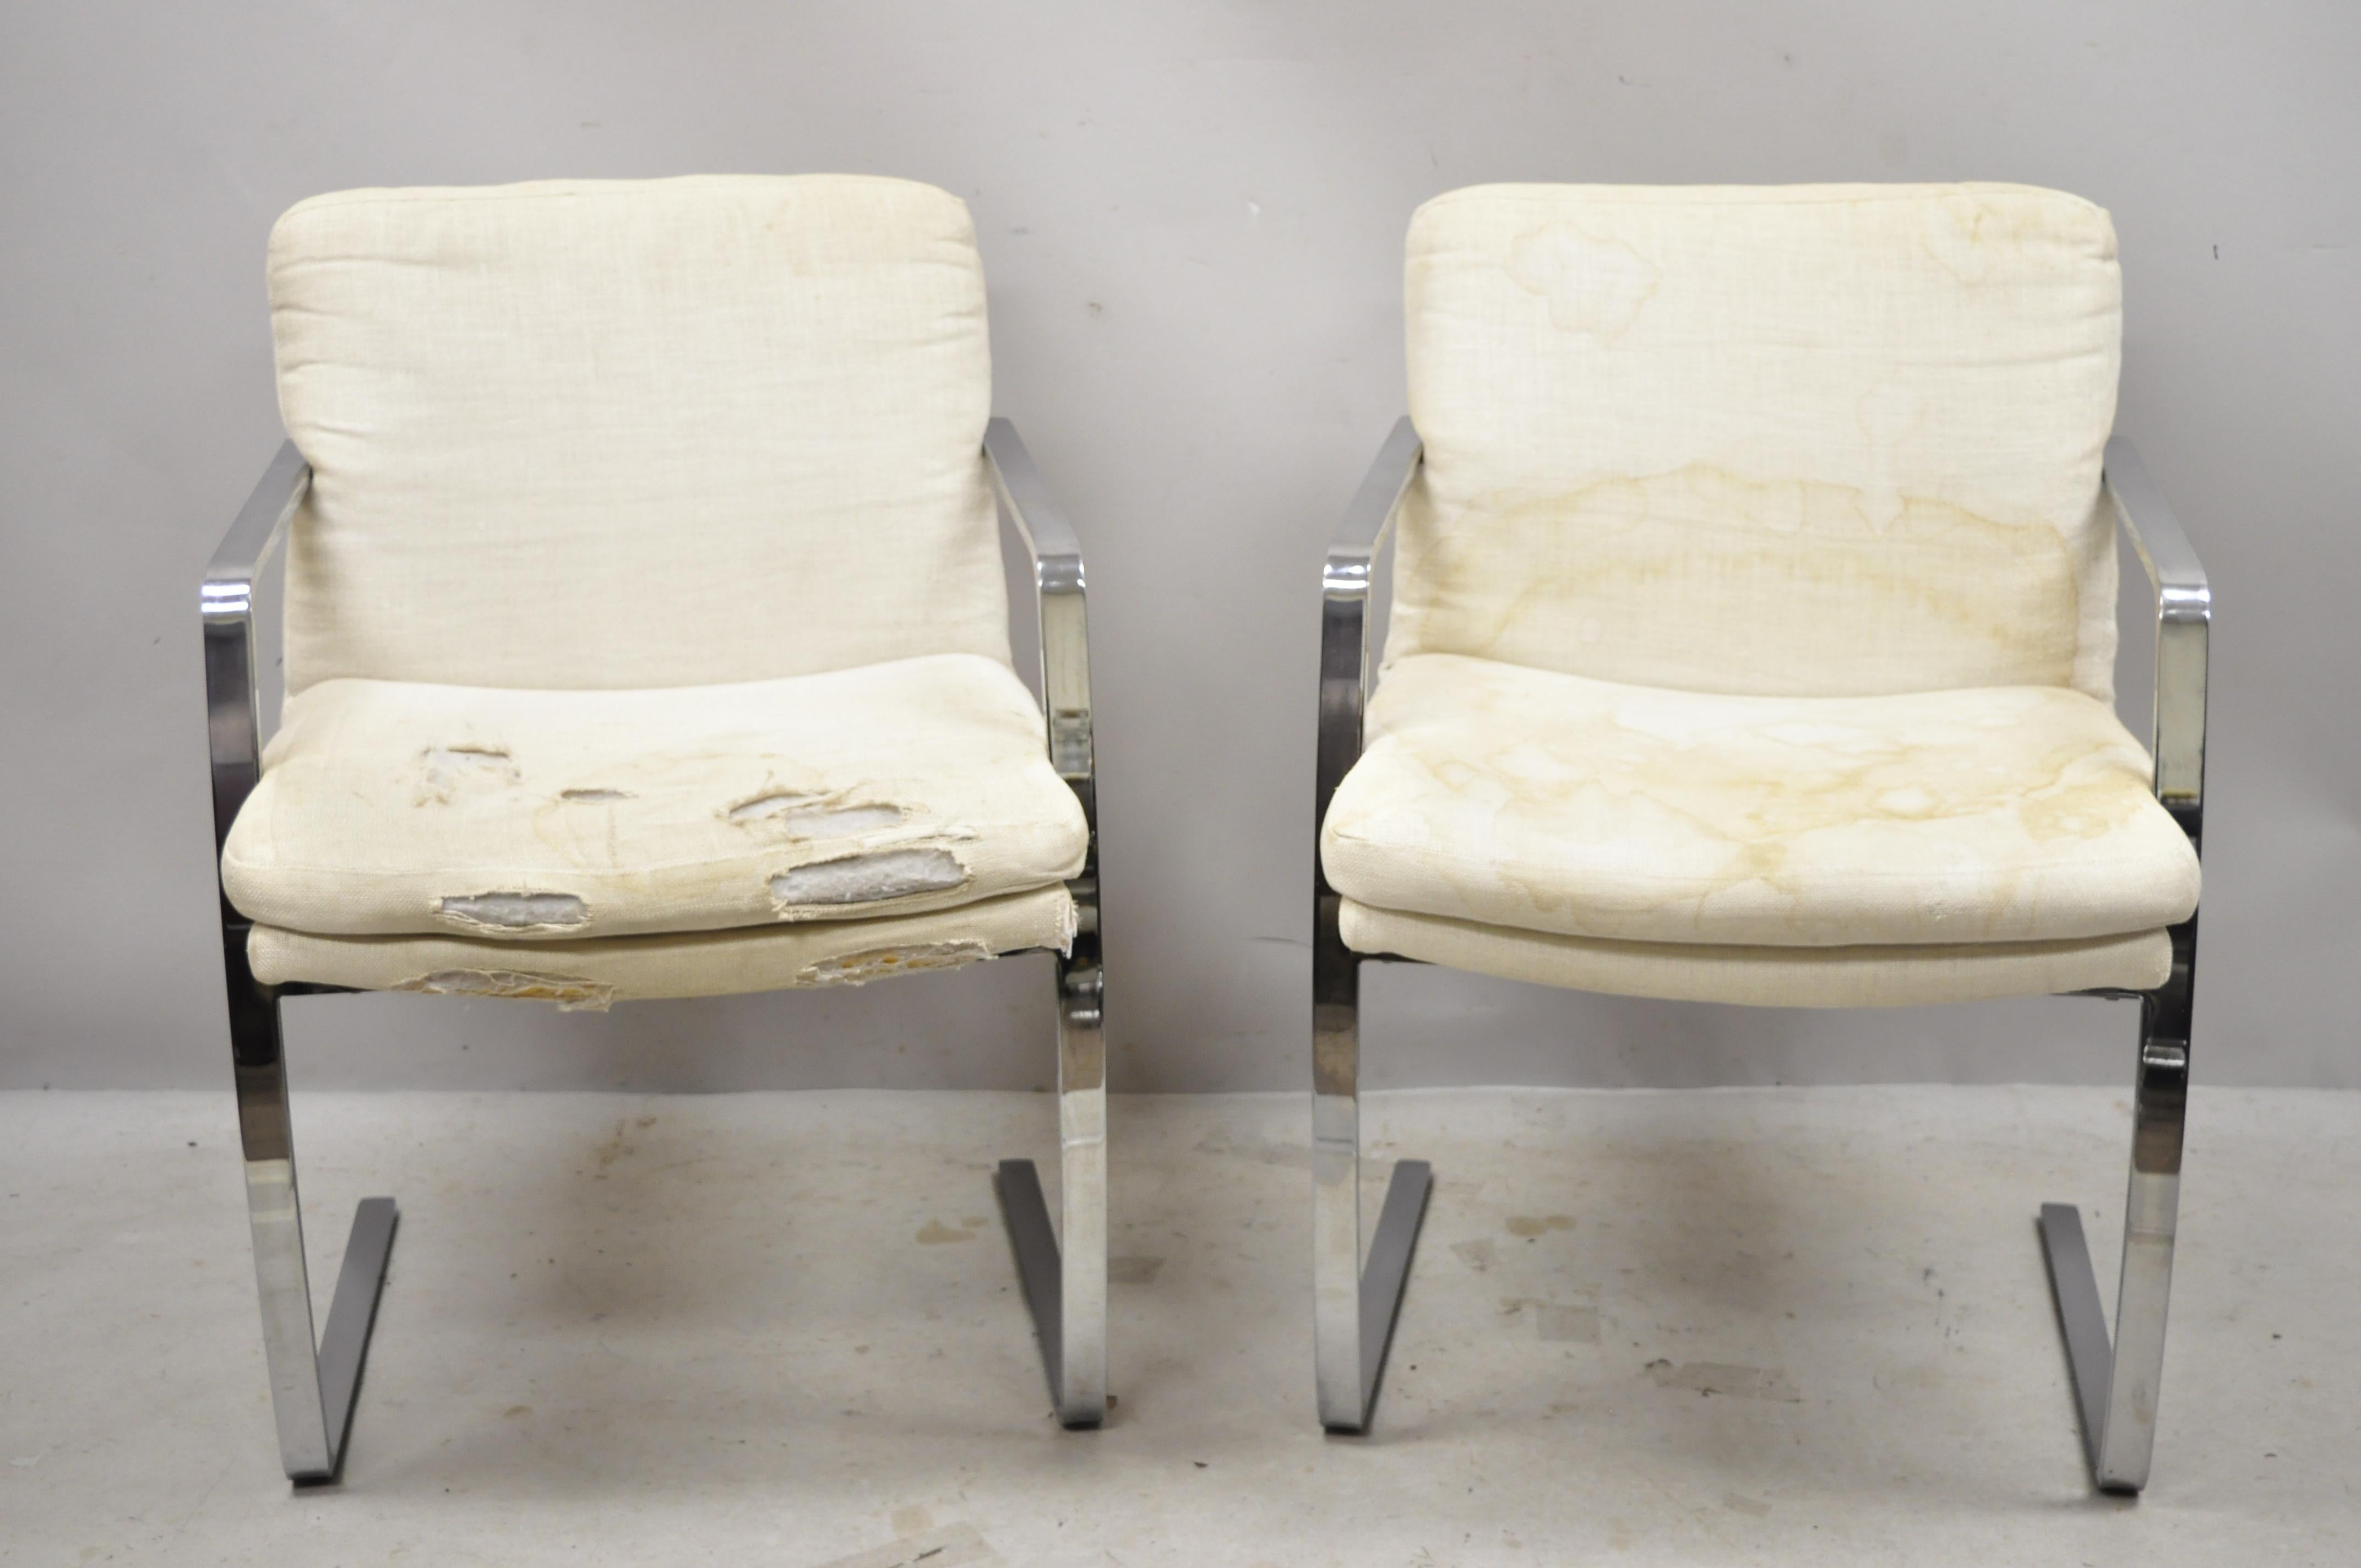 Vintage Mid-Century Modern BRNO Stil Chrom Freischwinger Lounge Sessel (C), ein Paar. Schwerer verchromter Stahlrahmen, hochwertige amerikanische Handwerkskunst, schlanke skulpturale Form, etwa Mitte bis Ende des 20. Abmessungen: 33